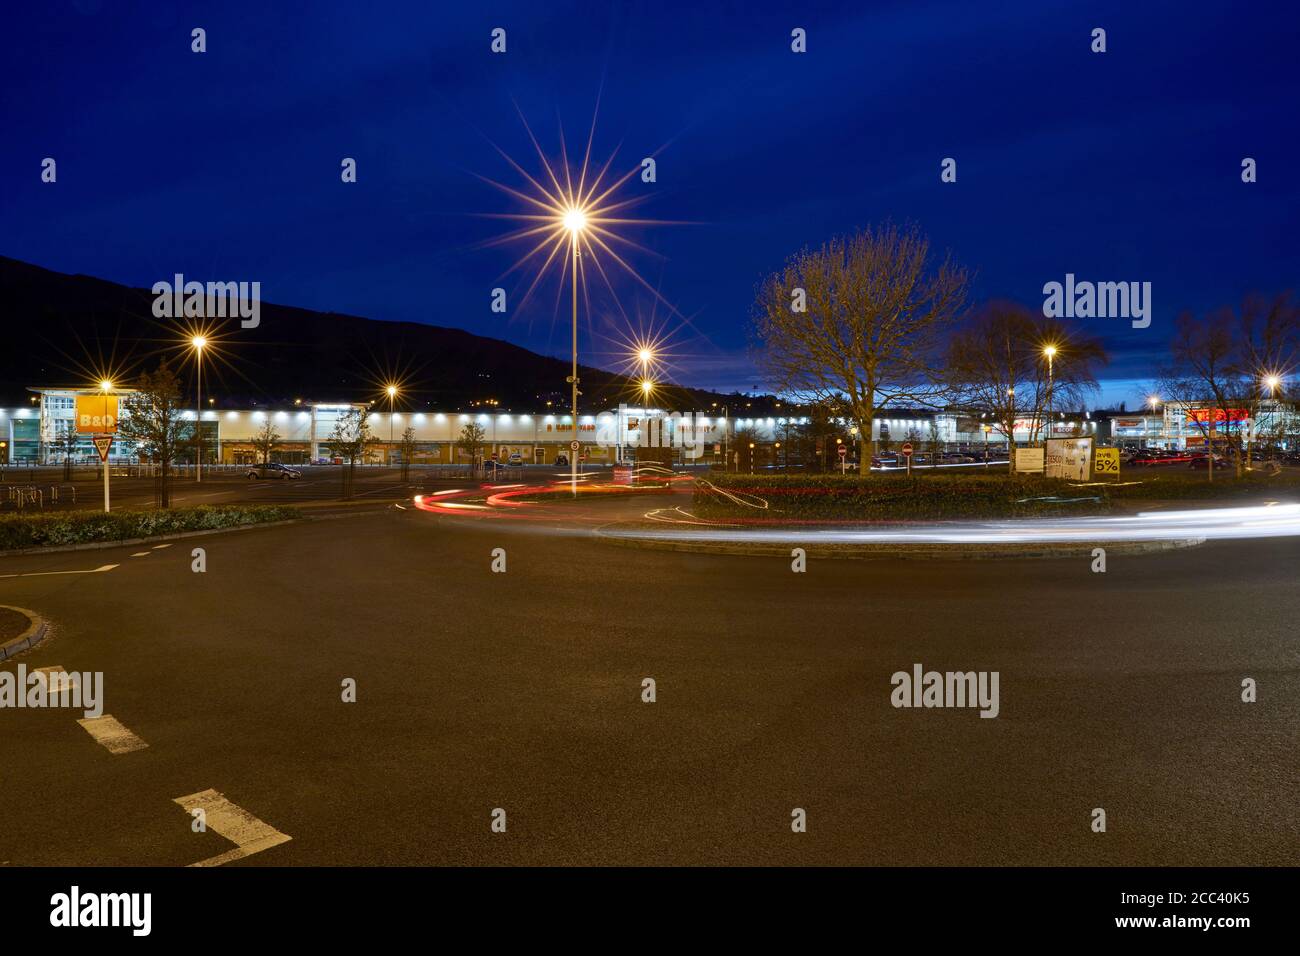 Parcheggio Tesco. Abbey Retail Park, Belfast, Belfast, Irlanda. Architetto: N/A, 2019. Foto Stock